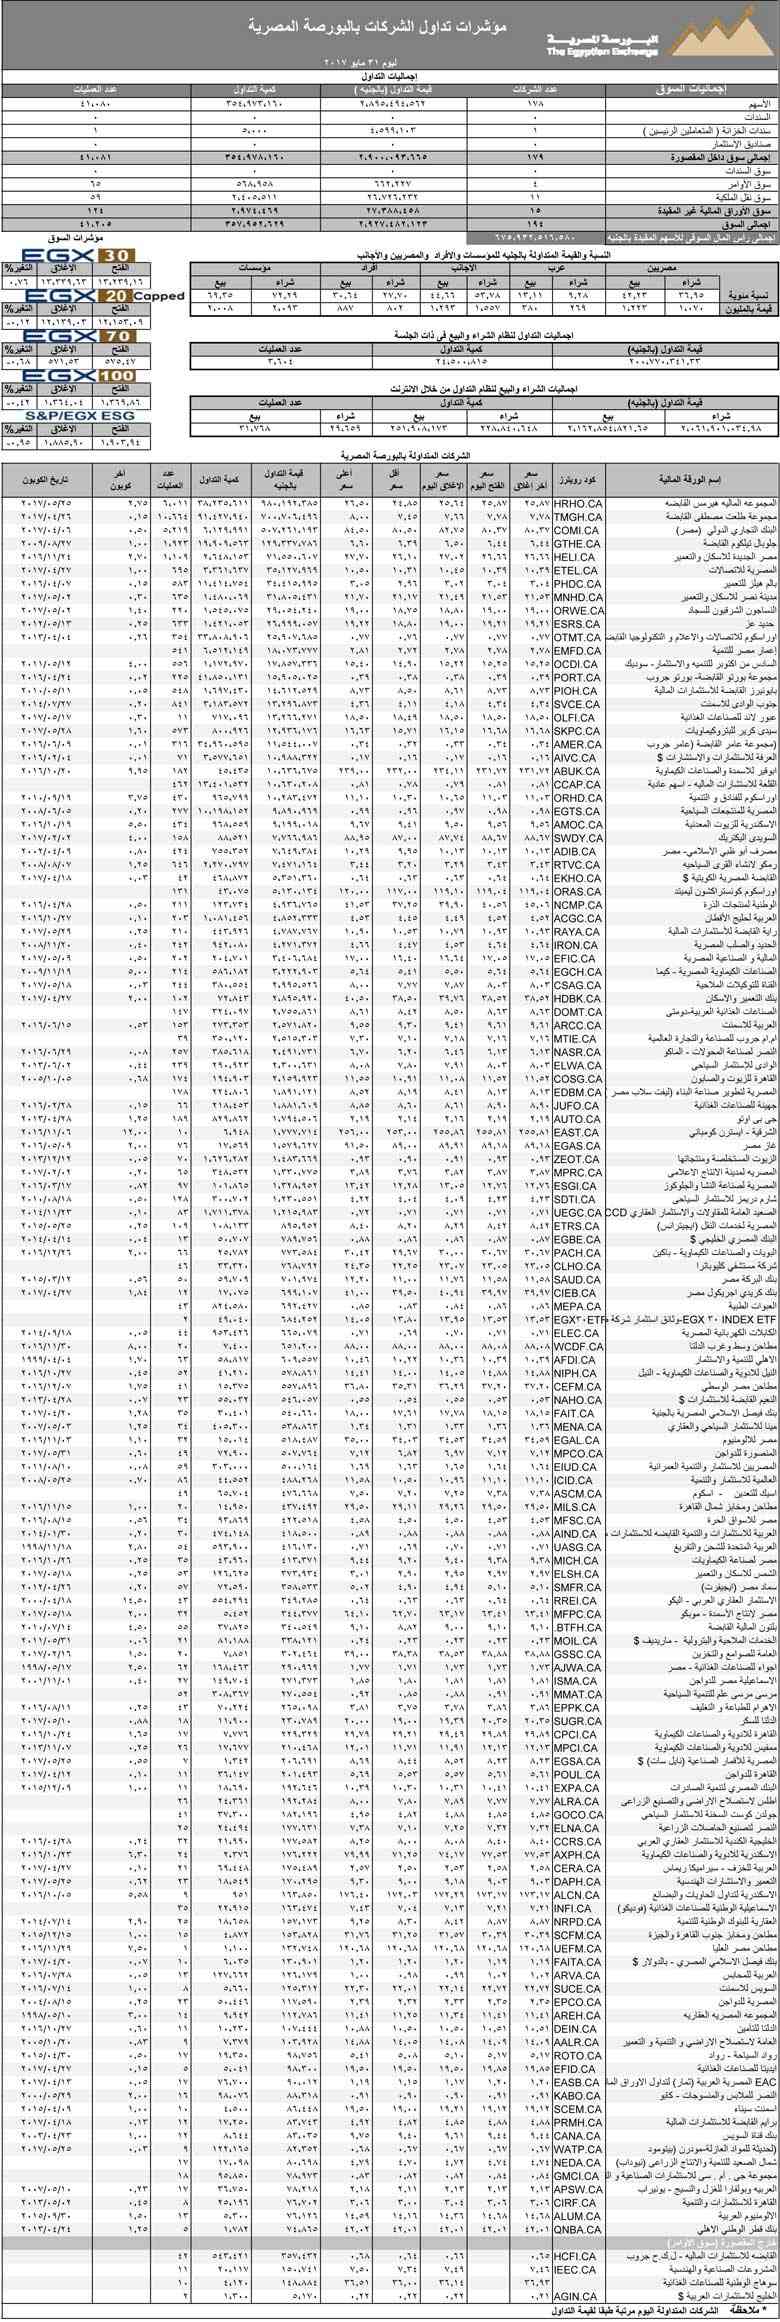 مؤشرات تداول الشركات بالبورصة المصرية 31 مايو 2017 2017-610